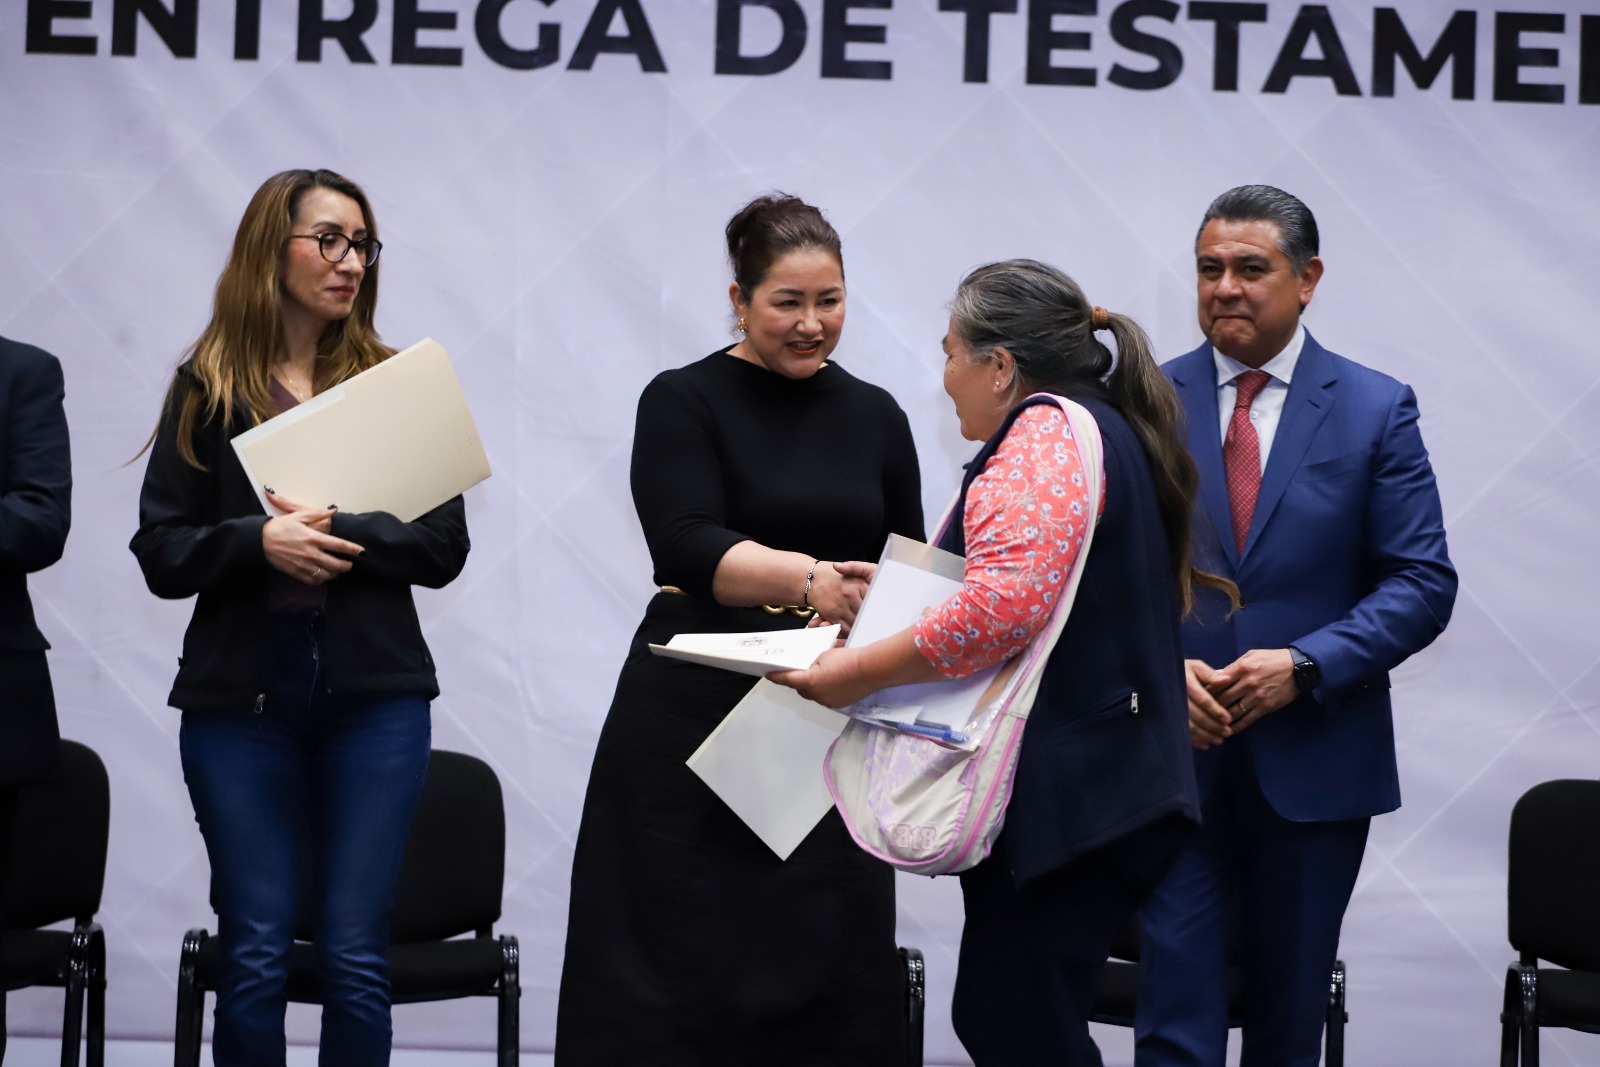 María Gómez y Tony Rodríguez entregan testamentos que heredan certeza a familias de Tlalnepantla